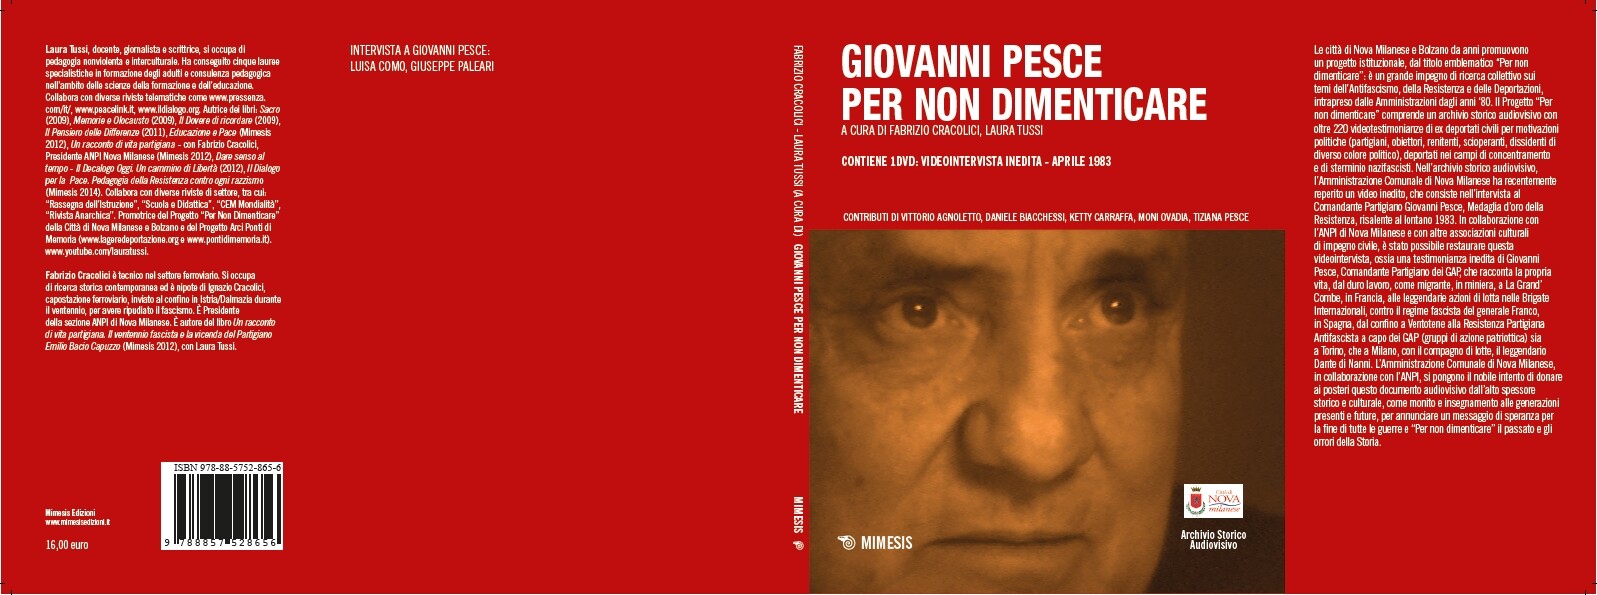 Dvd/Libro "Giovanni Pesce. Per non dimenticare", Mimesis 2015